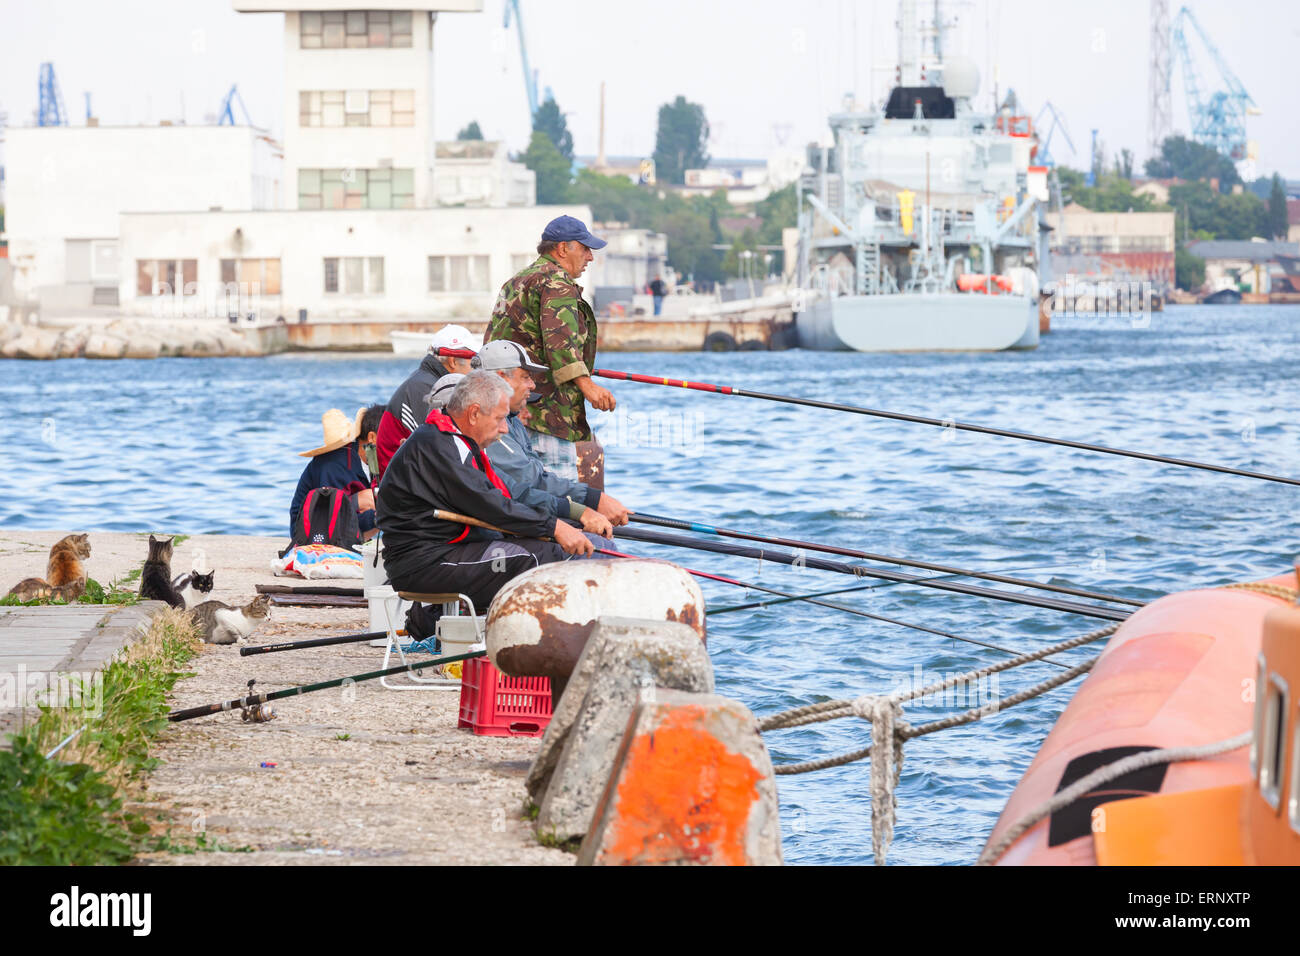 Varna, Bulgarien - 20. Juli 2014: Senior Fischer fangen Fische vom Ufer, Gruppe von Katzen warten auf Beute Stockfoto